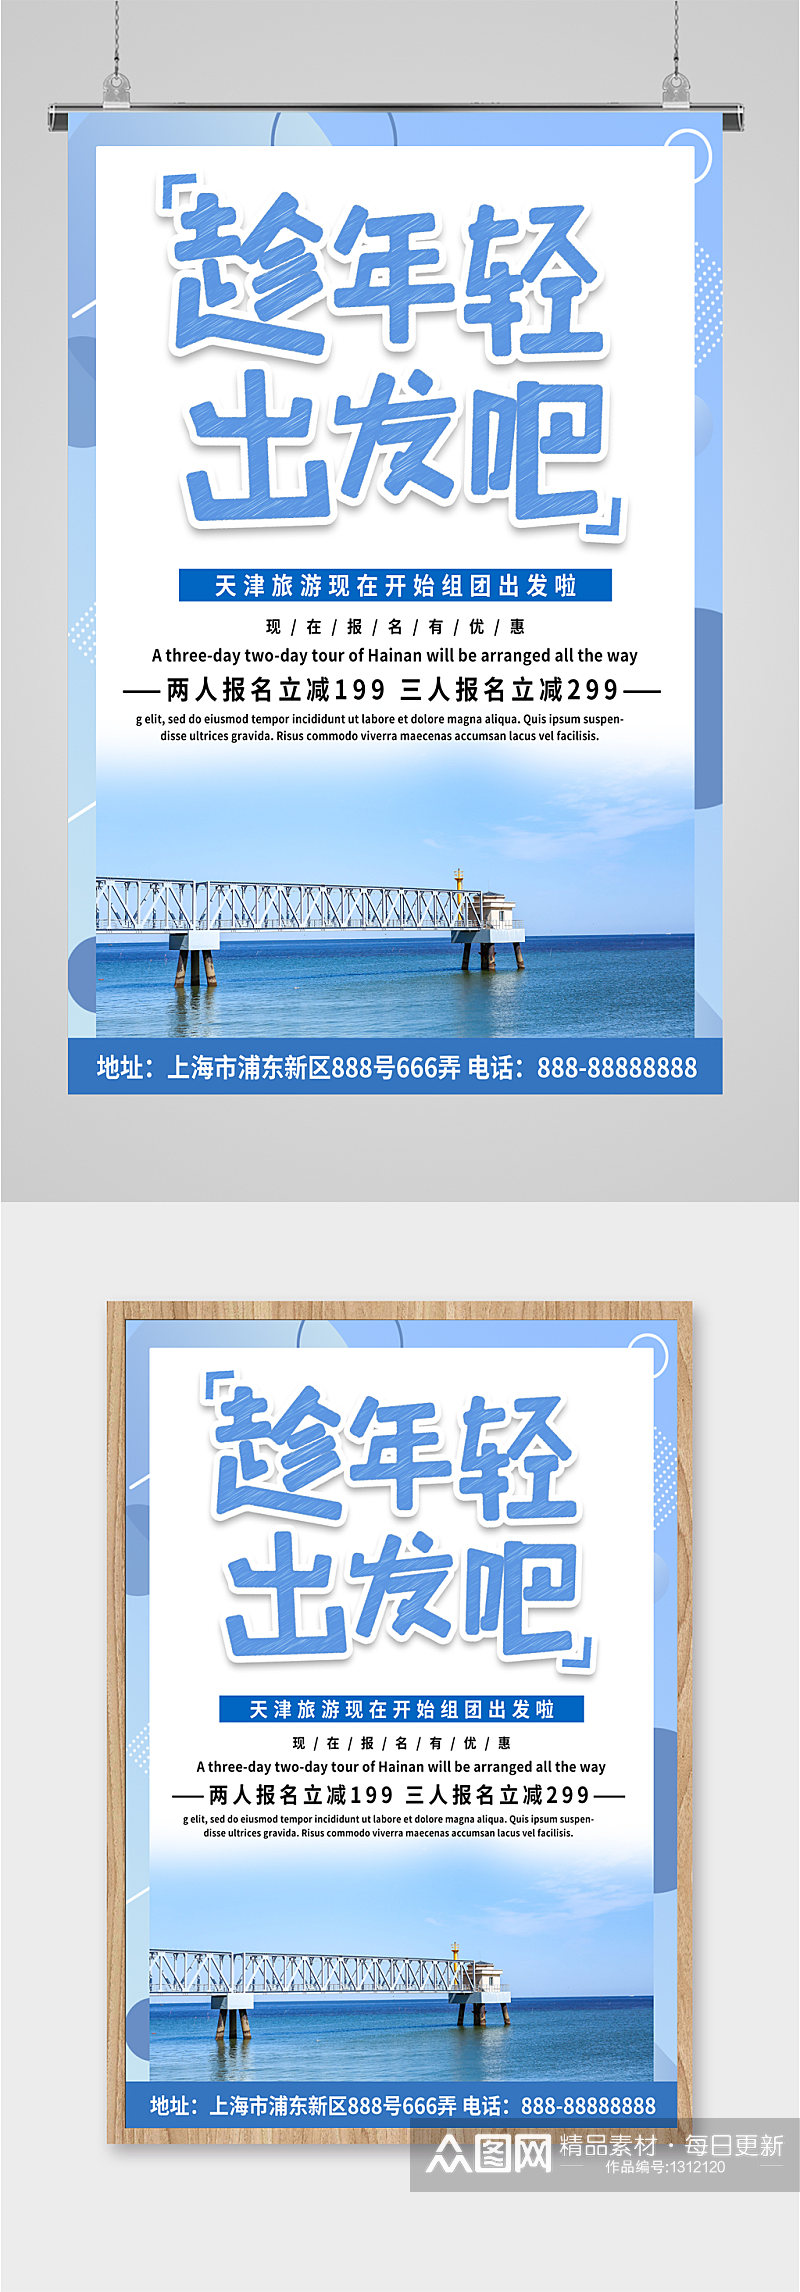 天津旅游旅行社海报素材